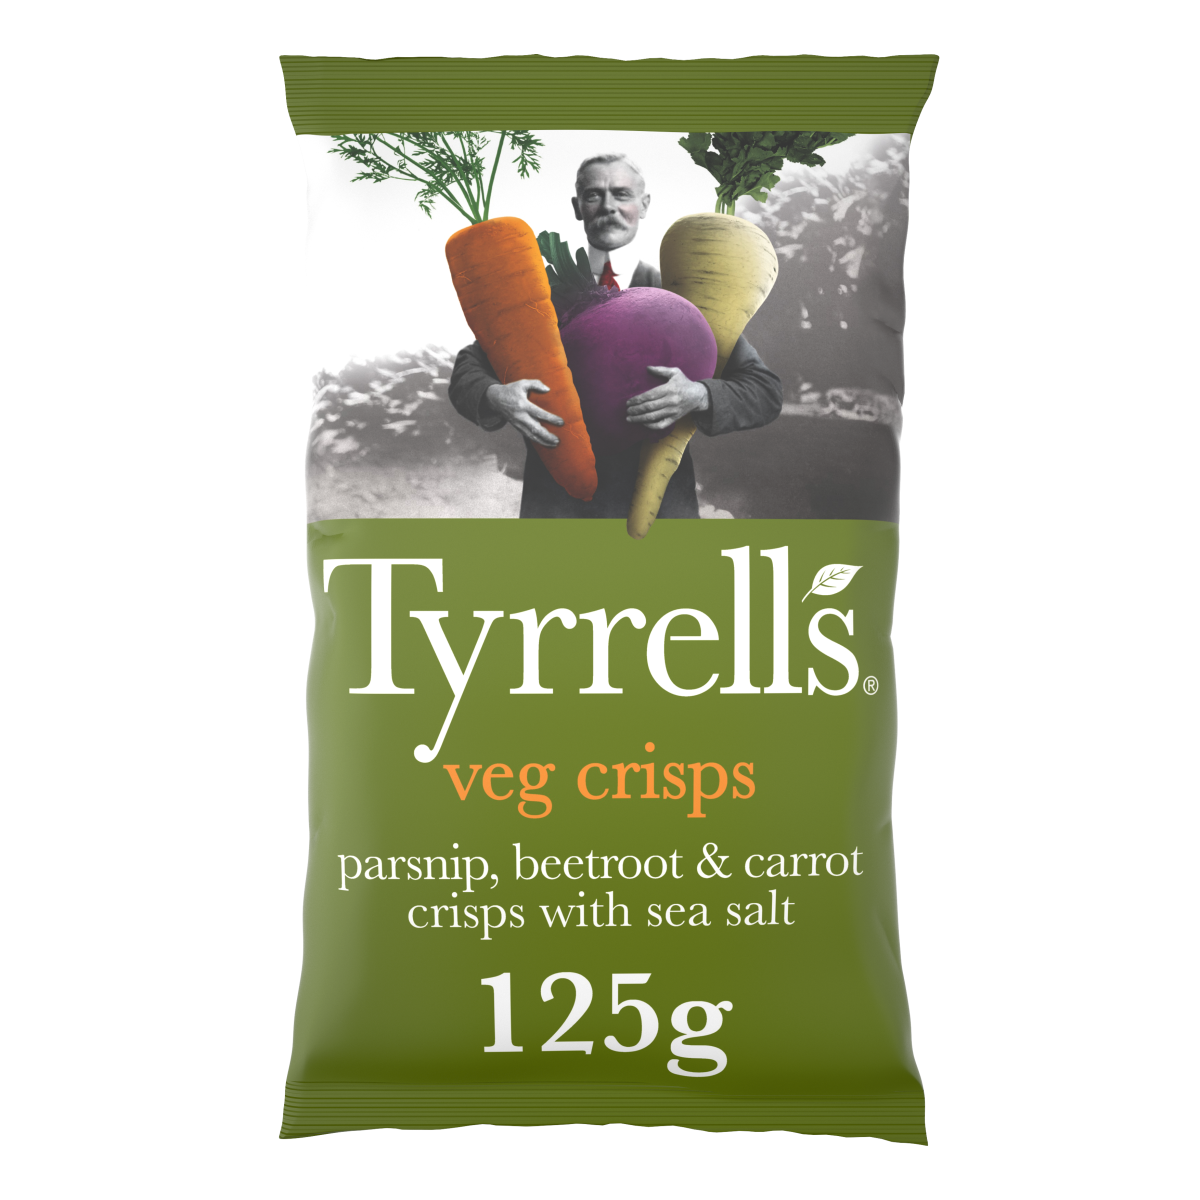 Tyrrells launches best ever ‘Tyrrellbly Tyrrellbly Tasty’ veg crisps